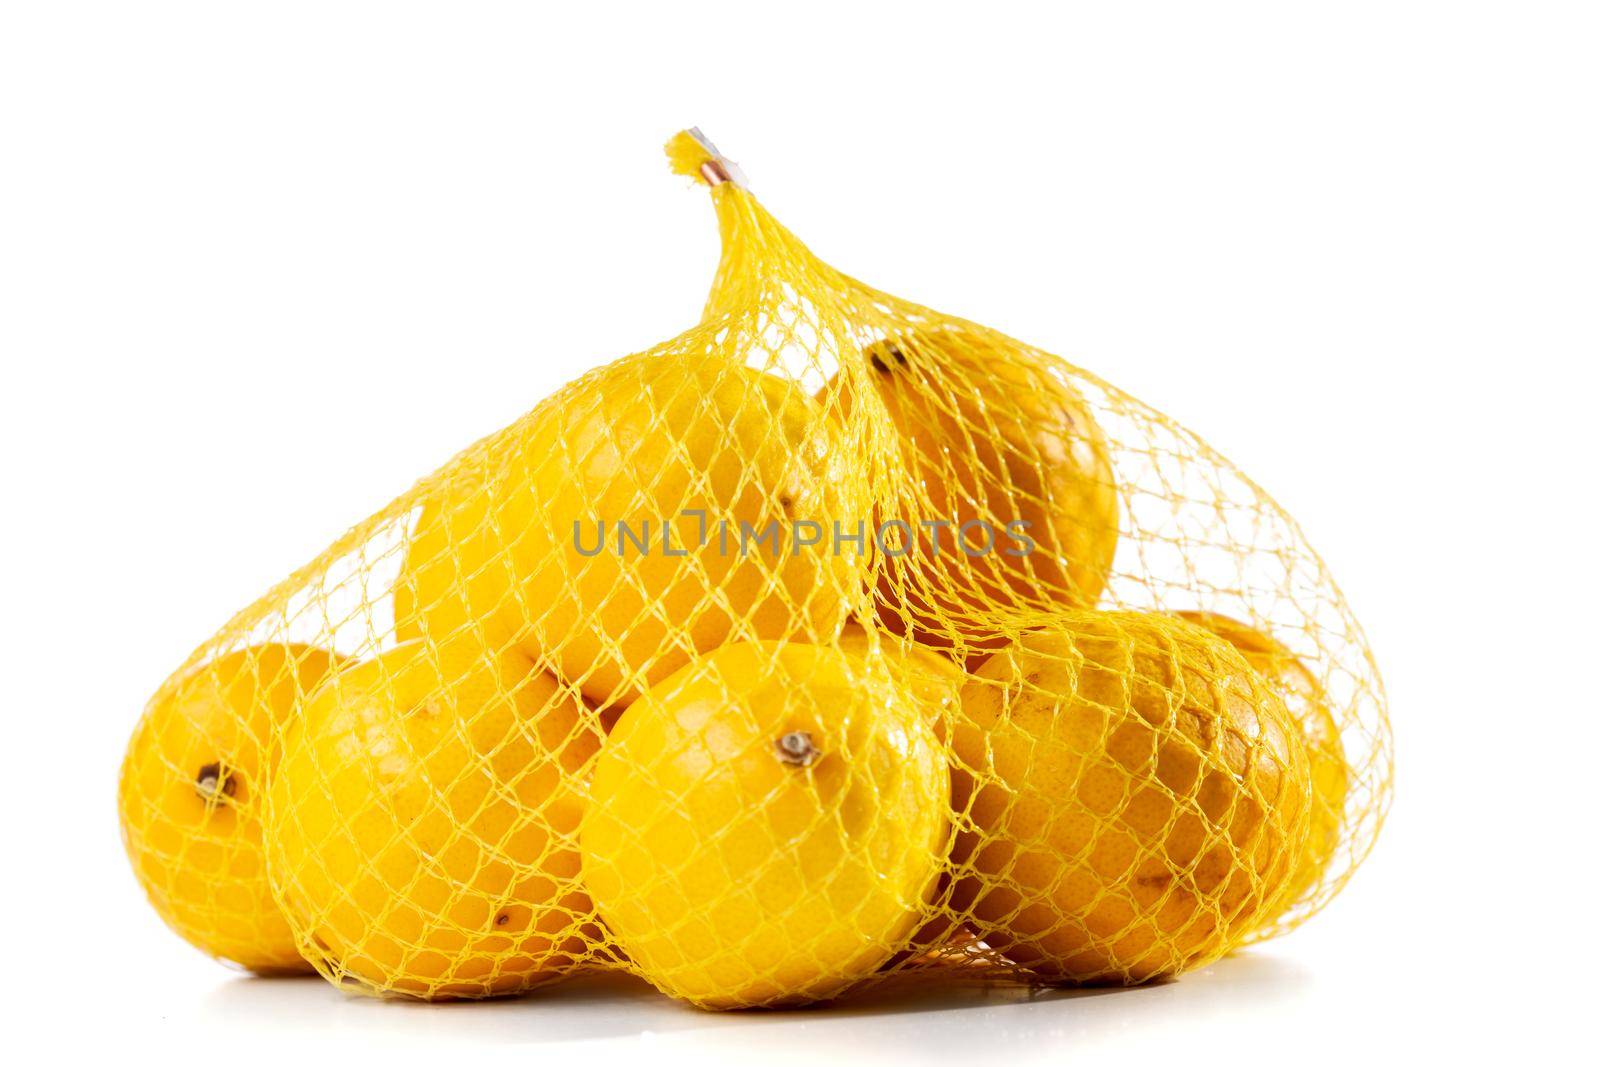 lemons in a mesh bag by kokimk